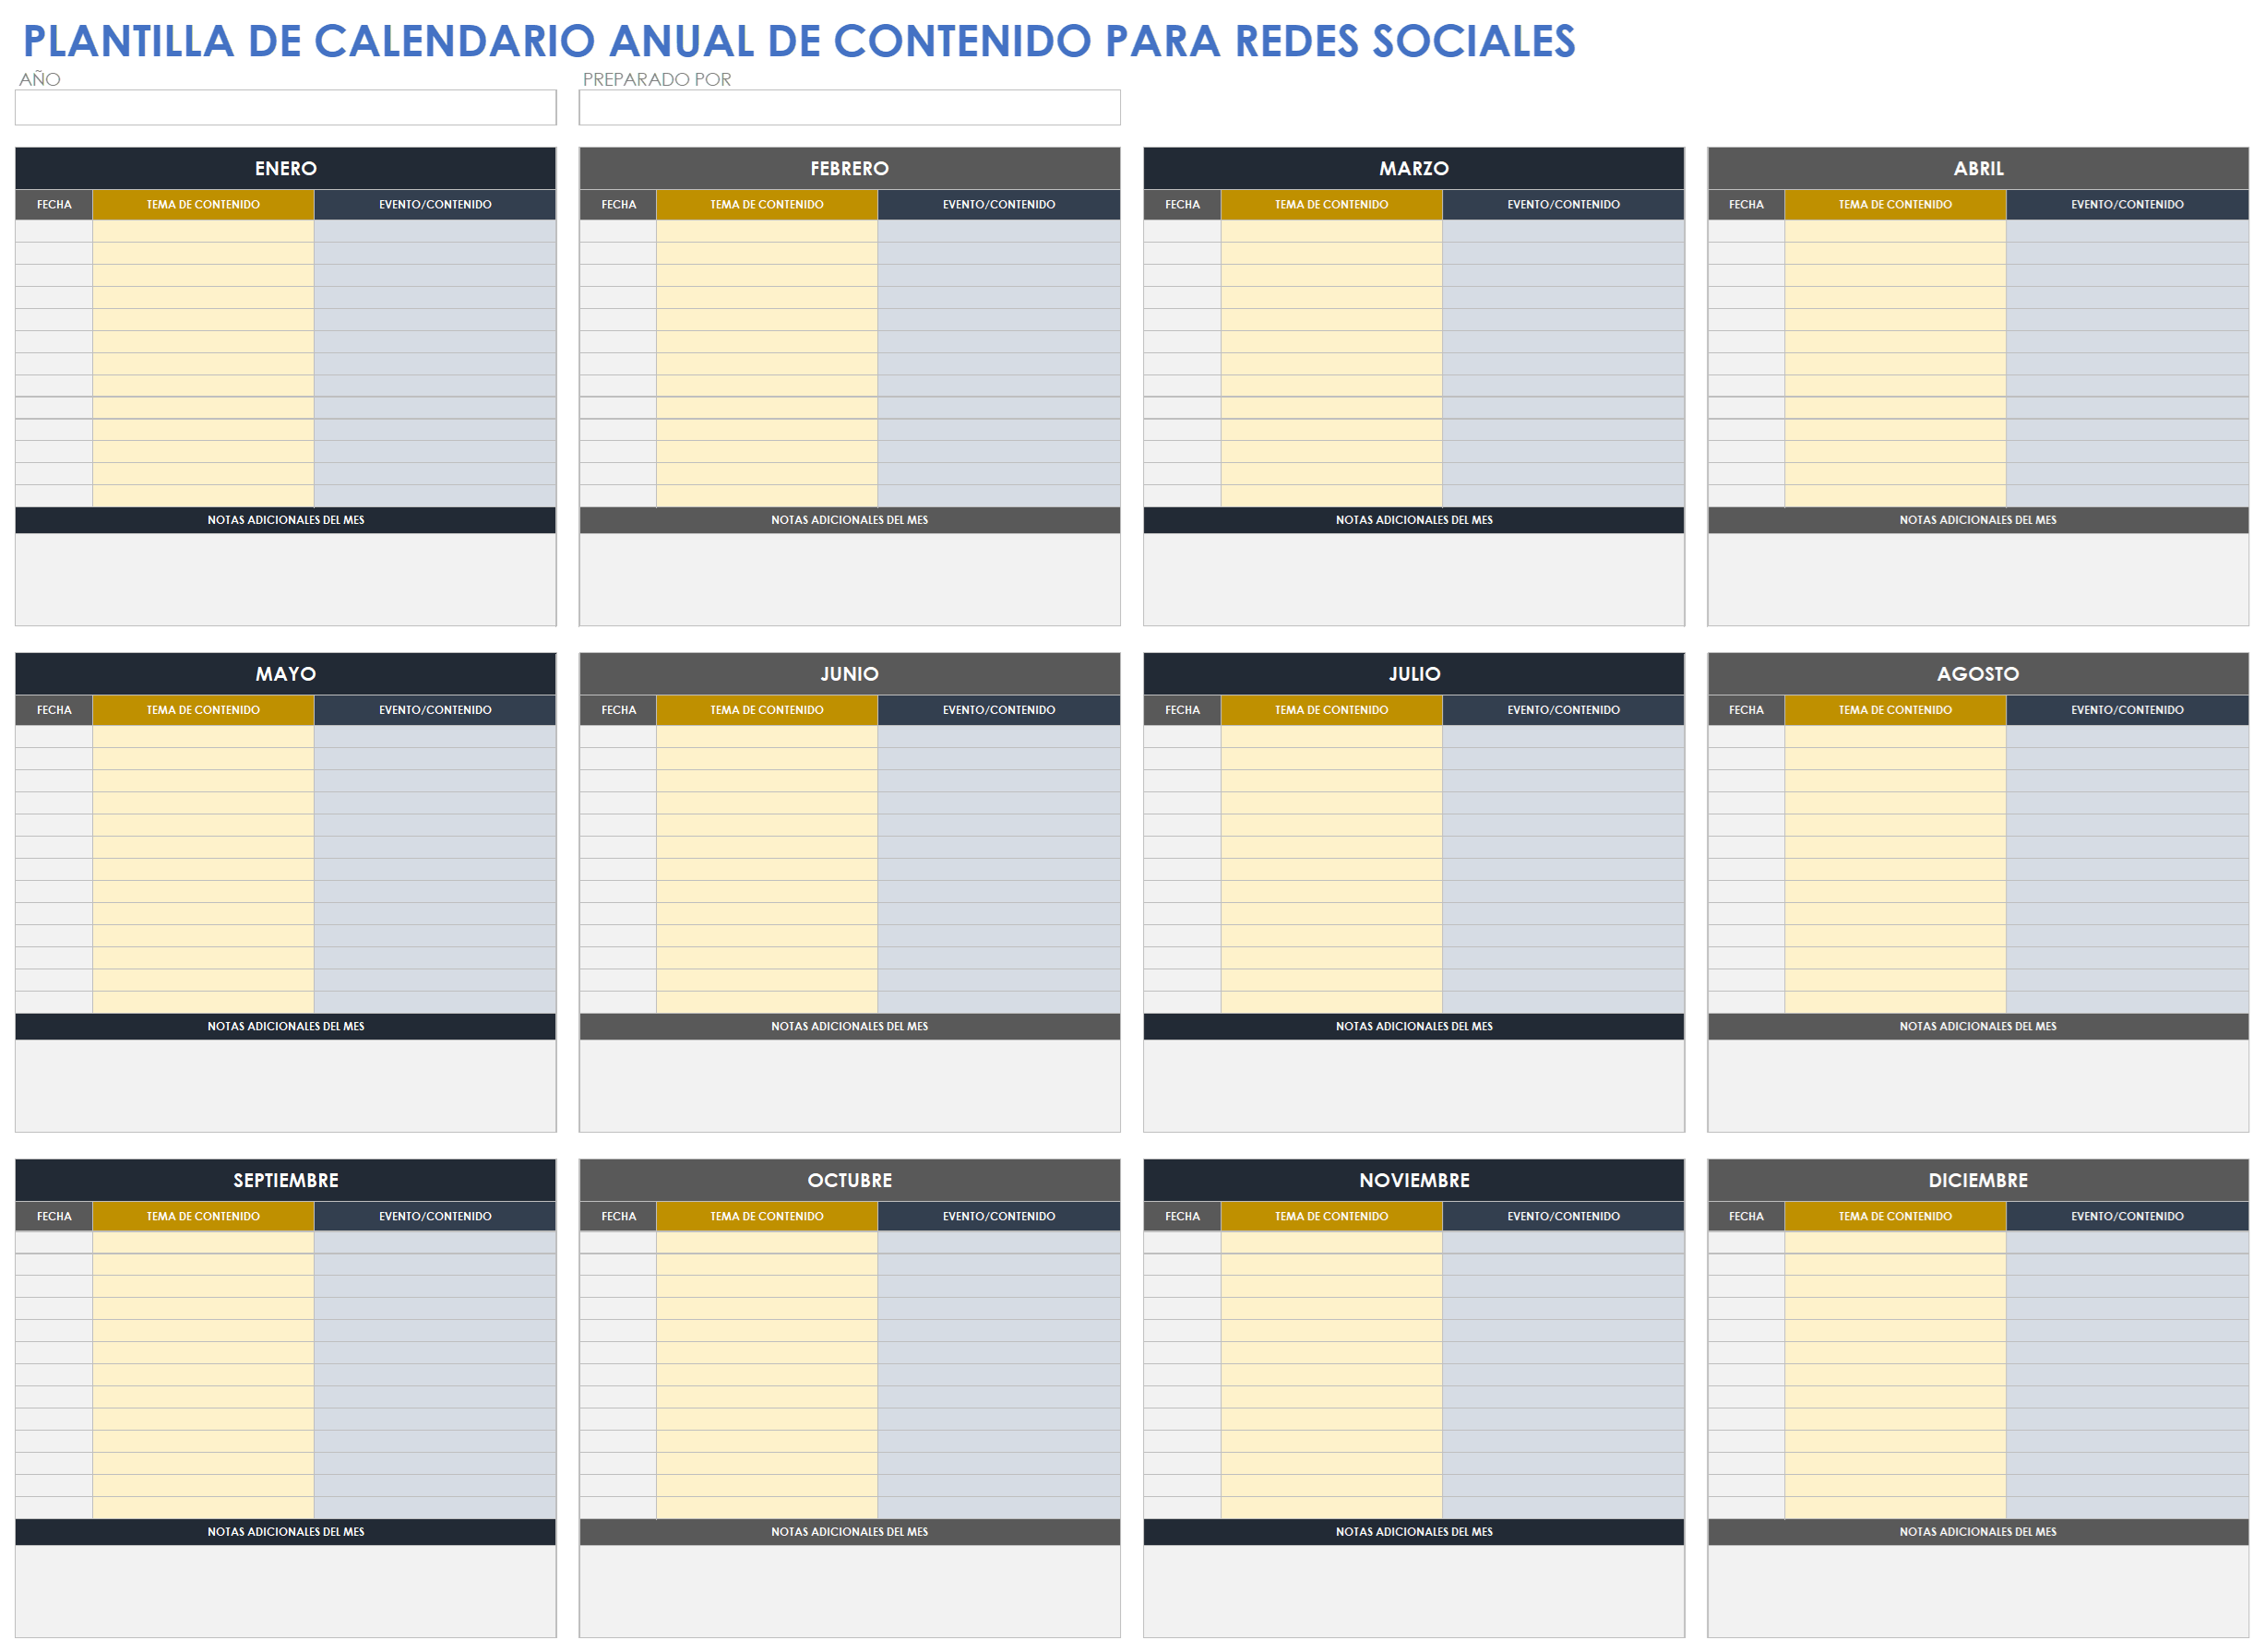 Plantilla de calendario anual de contenido de redes sociales